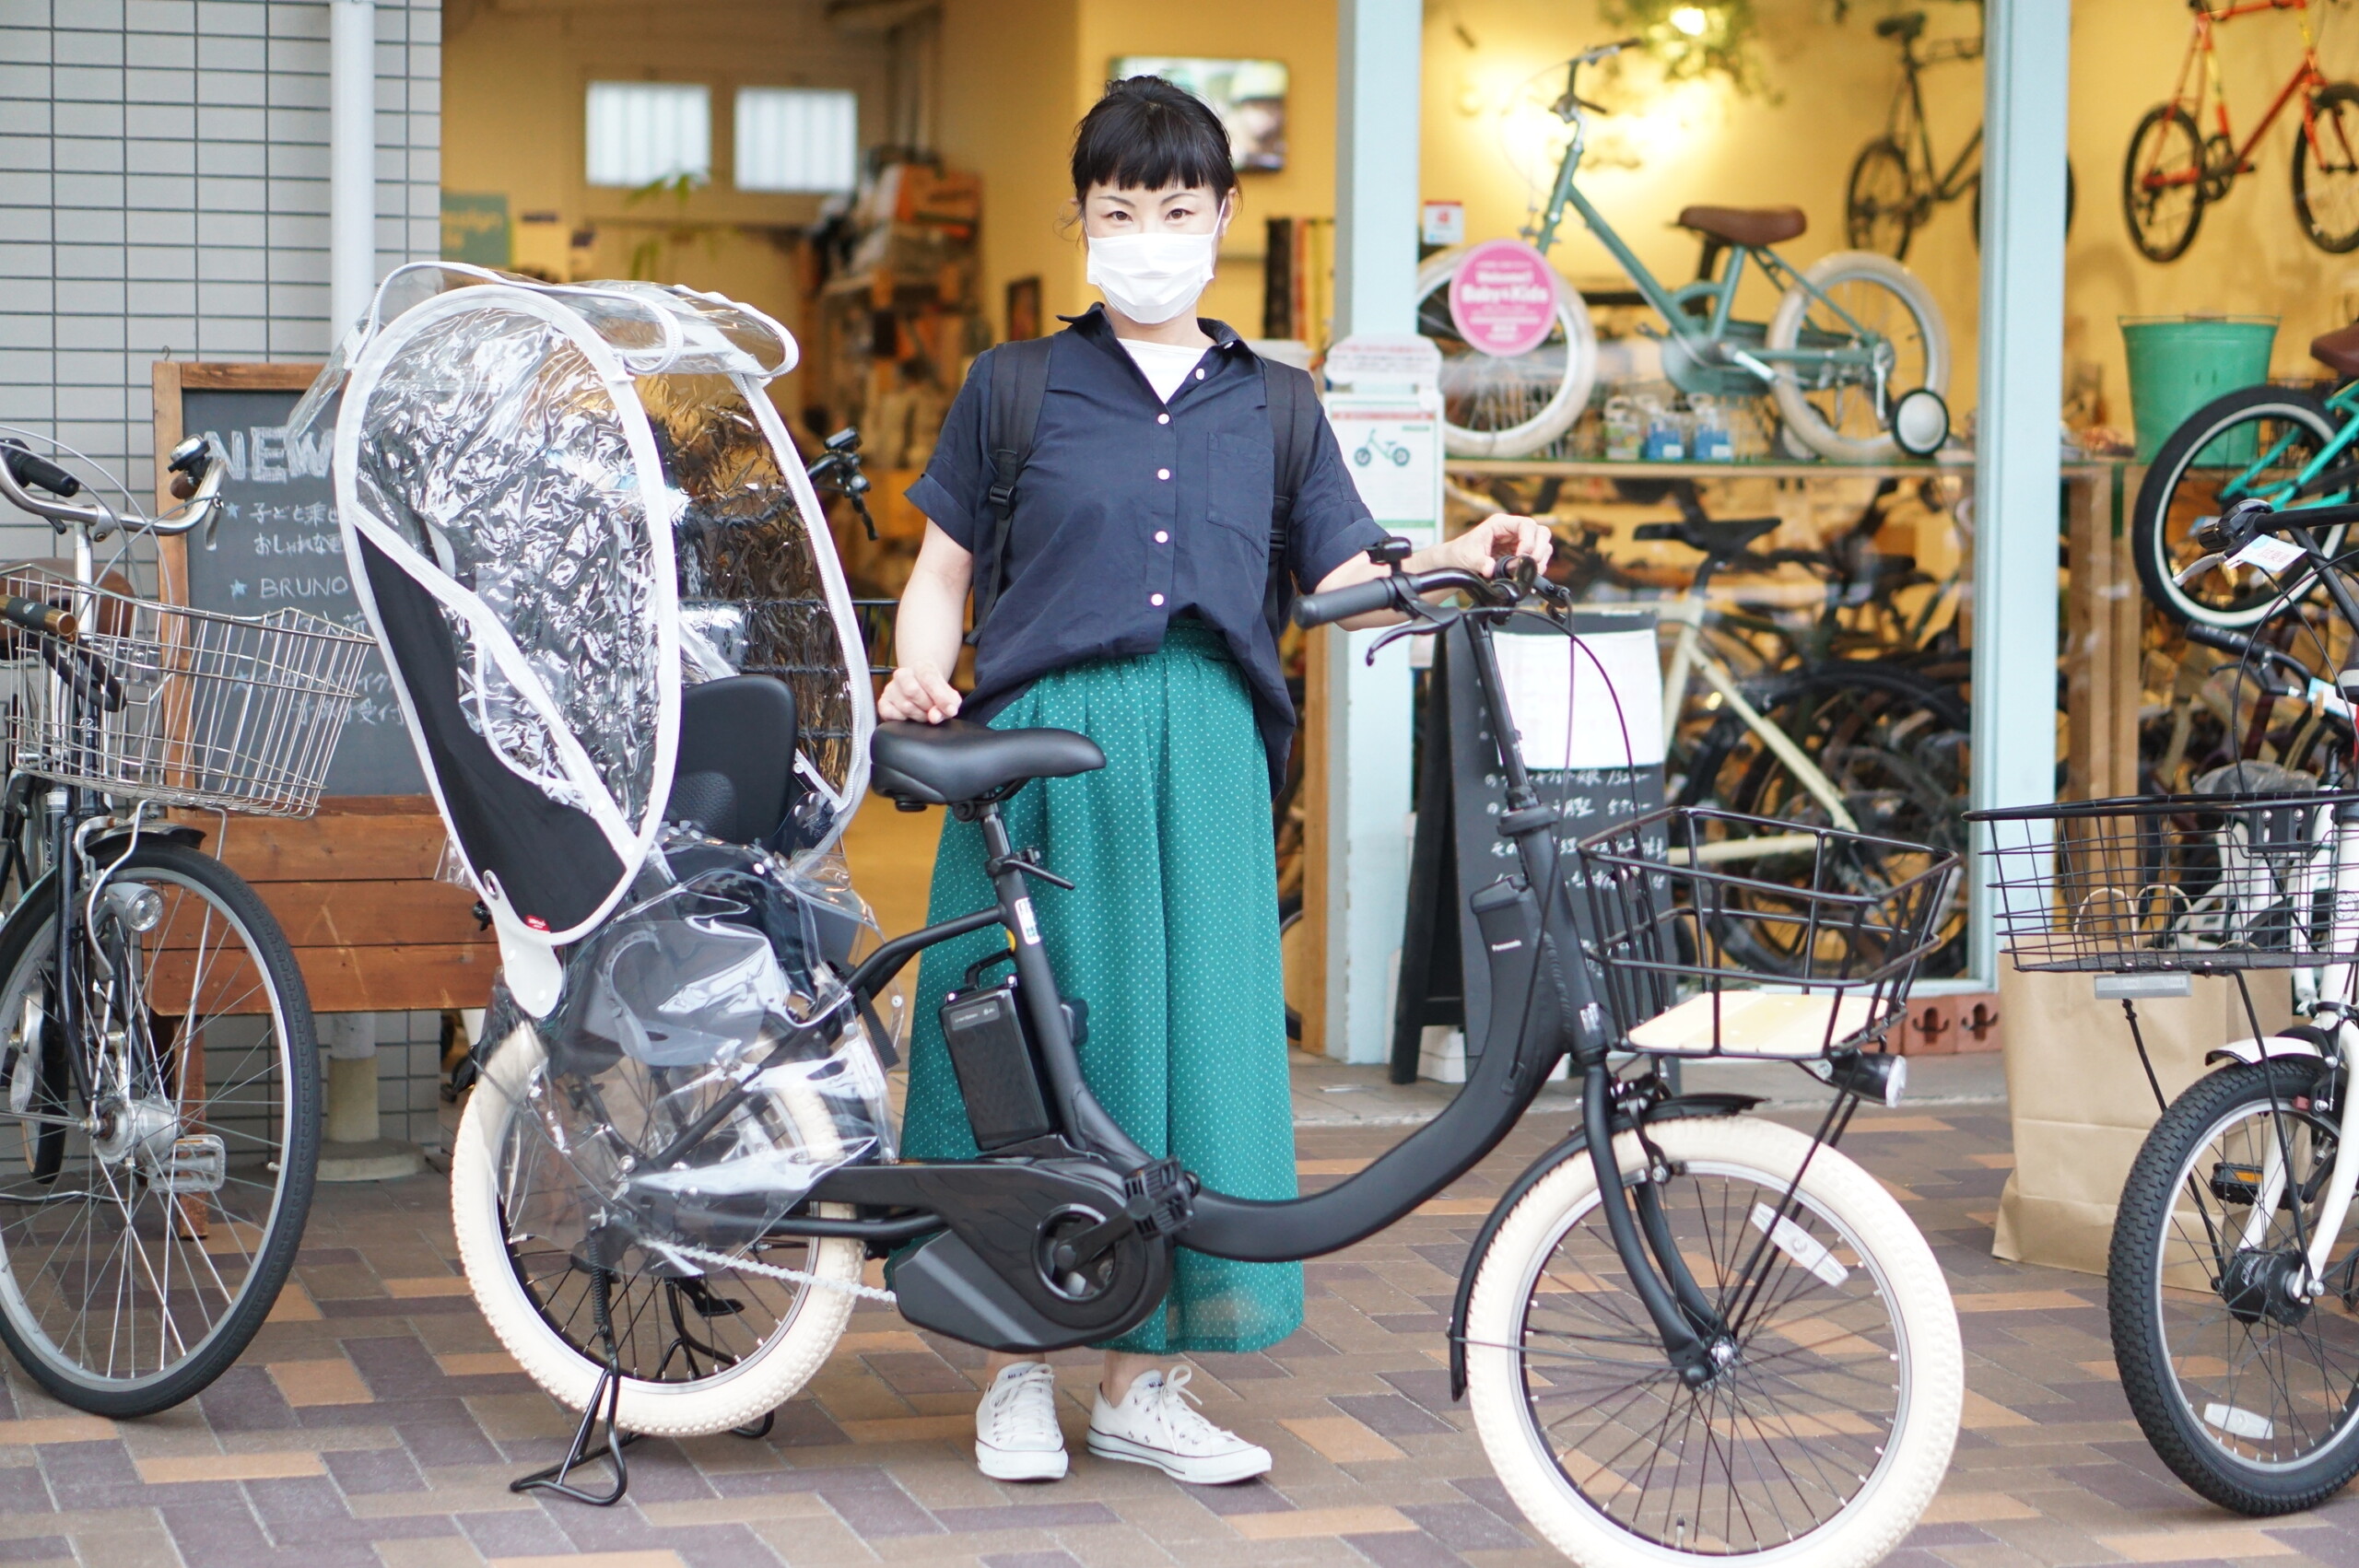 多種多様なコスパ電動自転車 Sw 親子で乗れるおしゃれでかっこいい自転車をお求めなら愛知県名古屋市北区のバズデザインサイクル